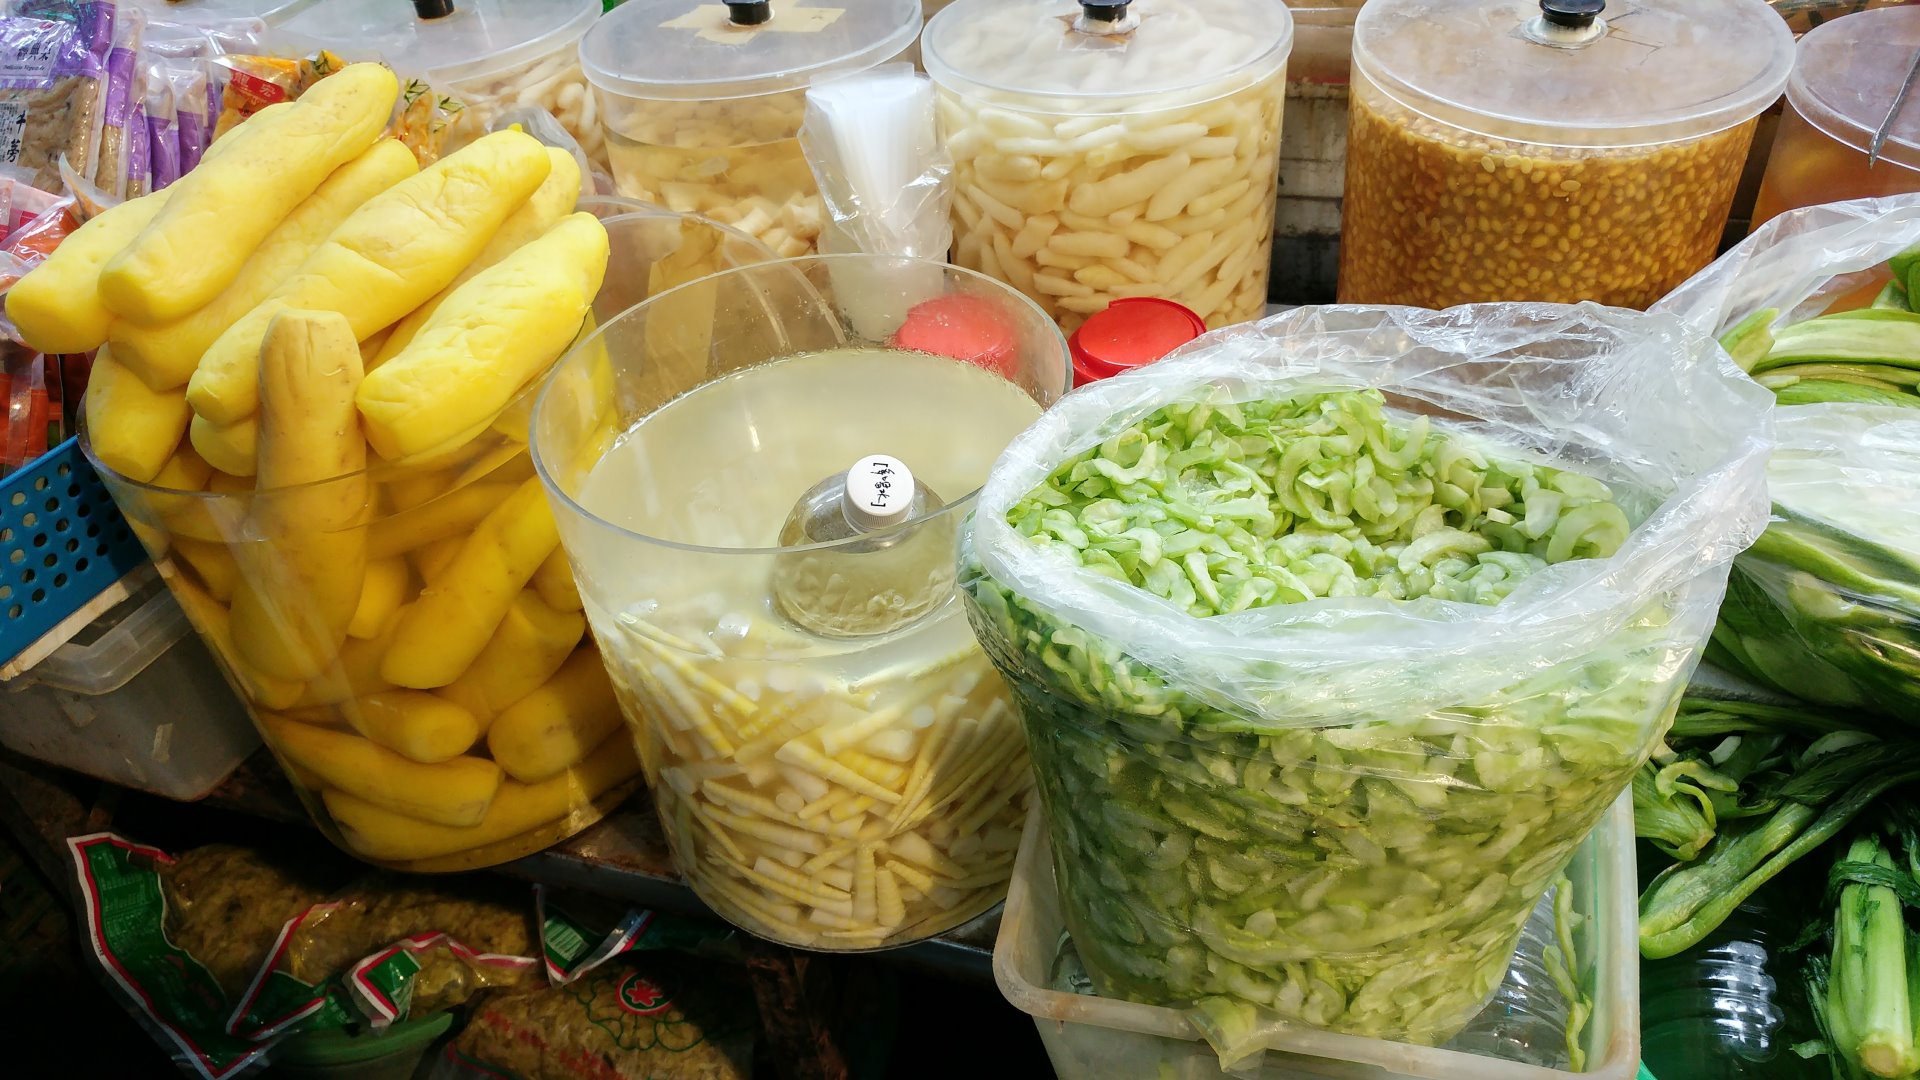 嘉義東市市場吳氏醬菜- 醃黃蘿蔔、醃麻竹筍、醃瓜(醃越瓜)，為嘉義餐桌上非常常見的醃菜(醬菜)！